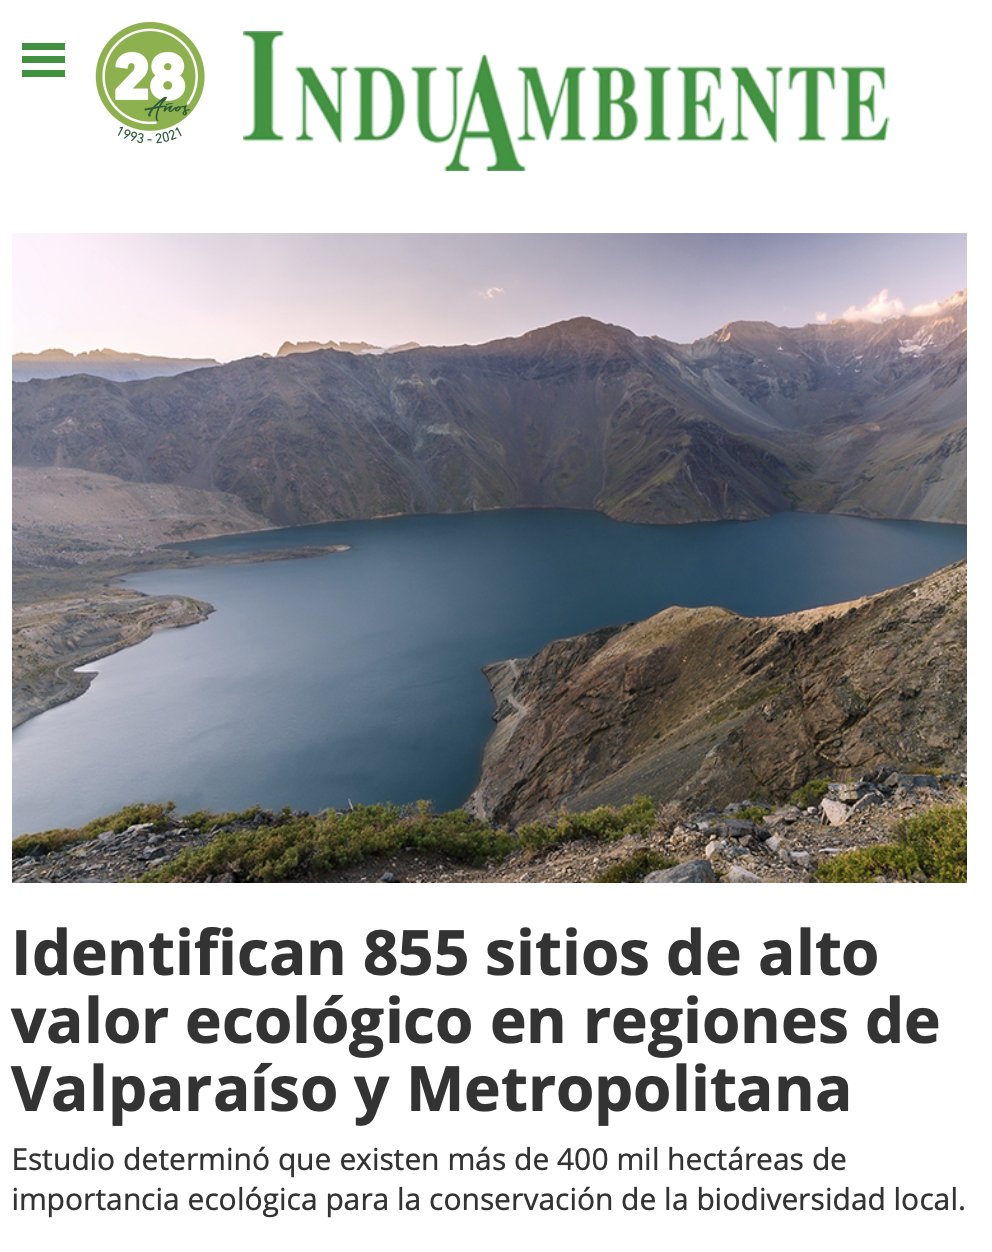 Identifican 855 sitios de alto valor ecológico en regiones de Valparaíso y Metropolitana